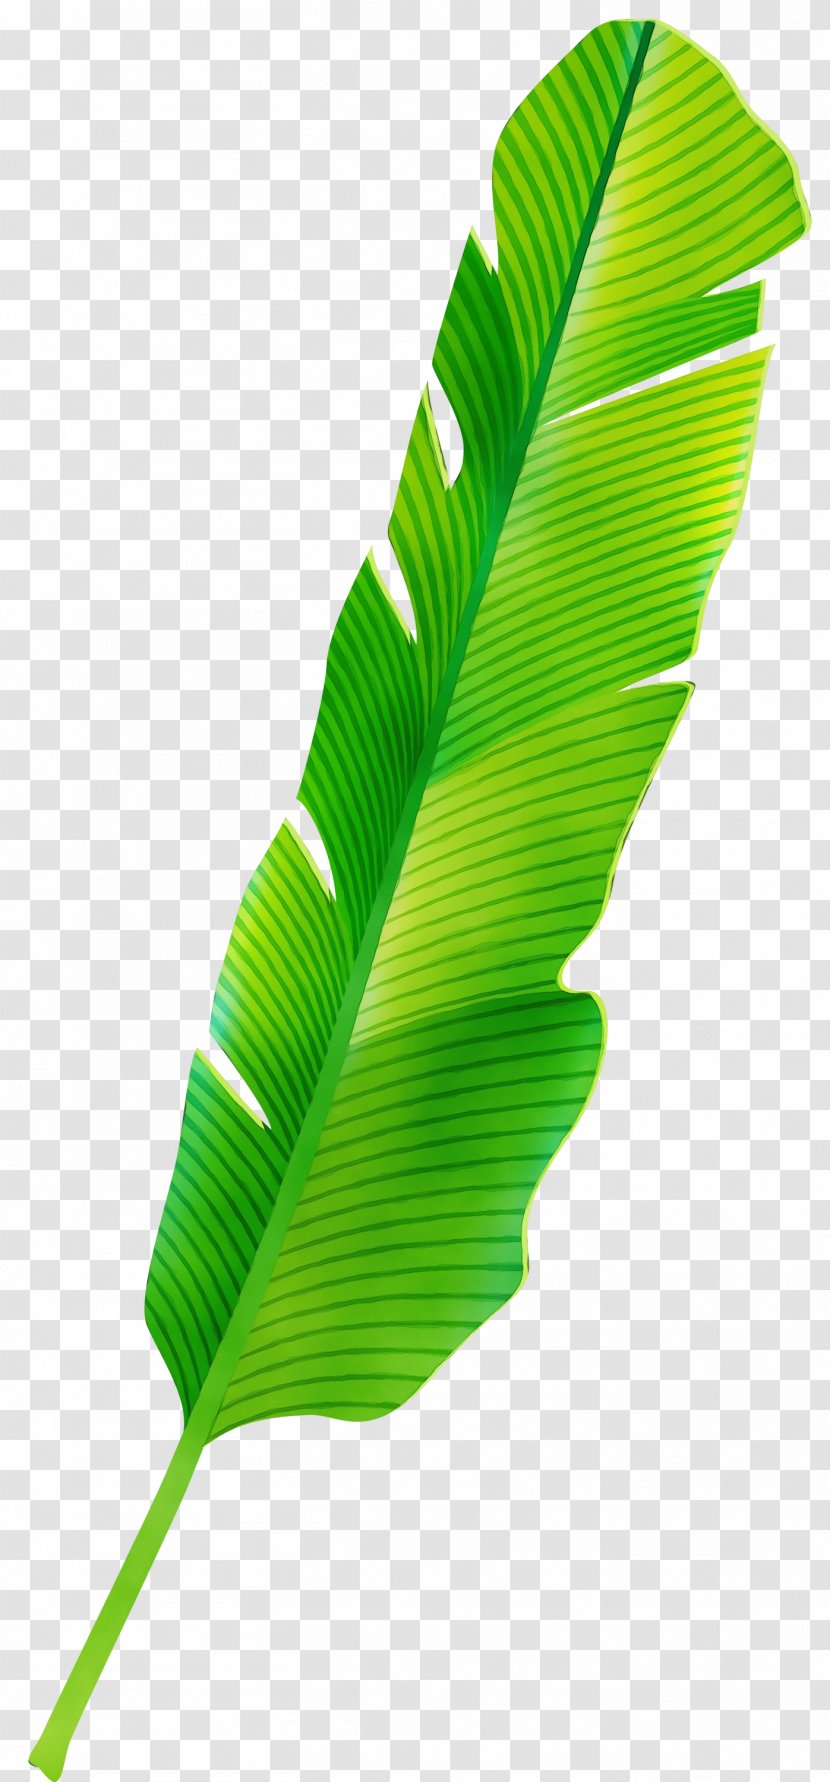 Banana Leaf - Plant Stem Transparent PNG